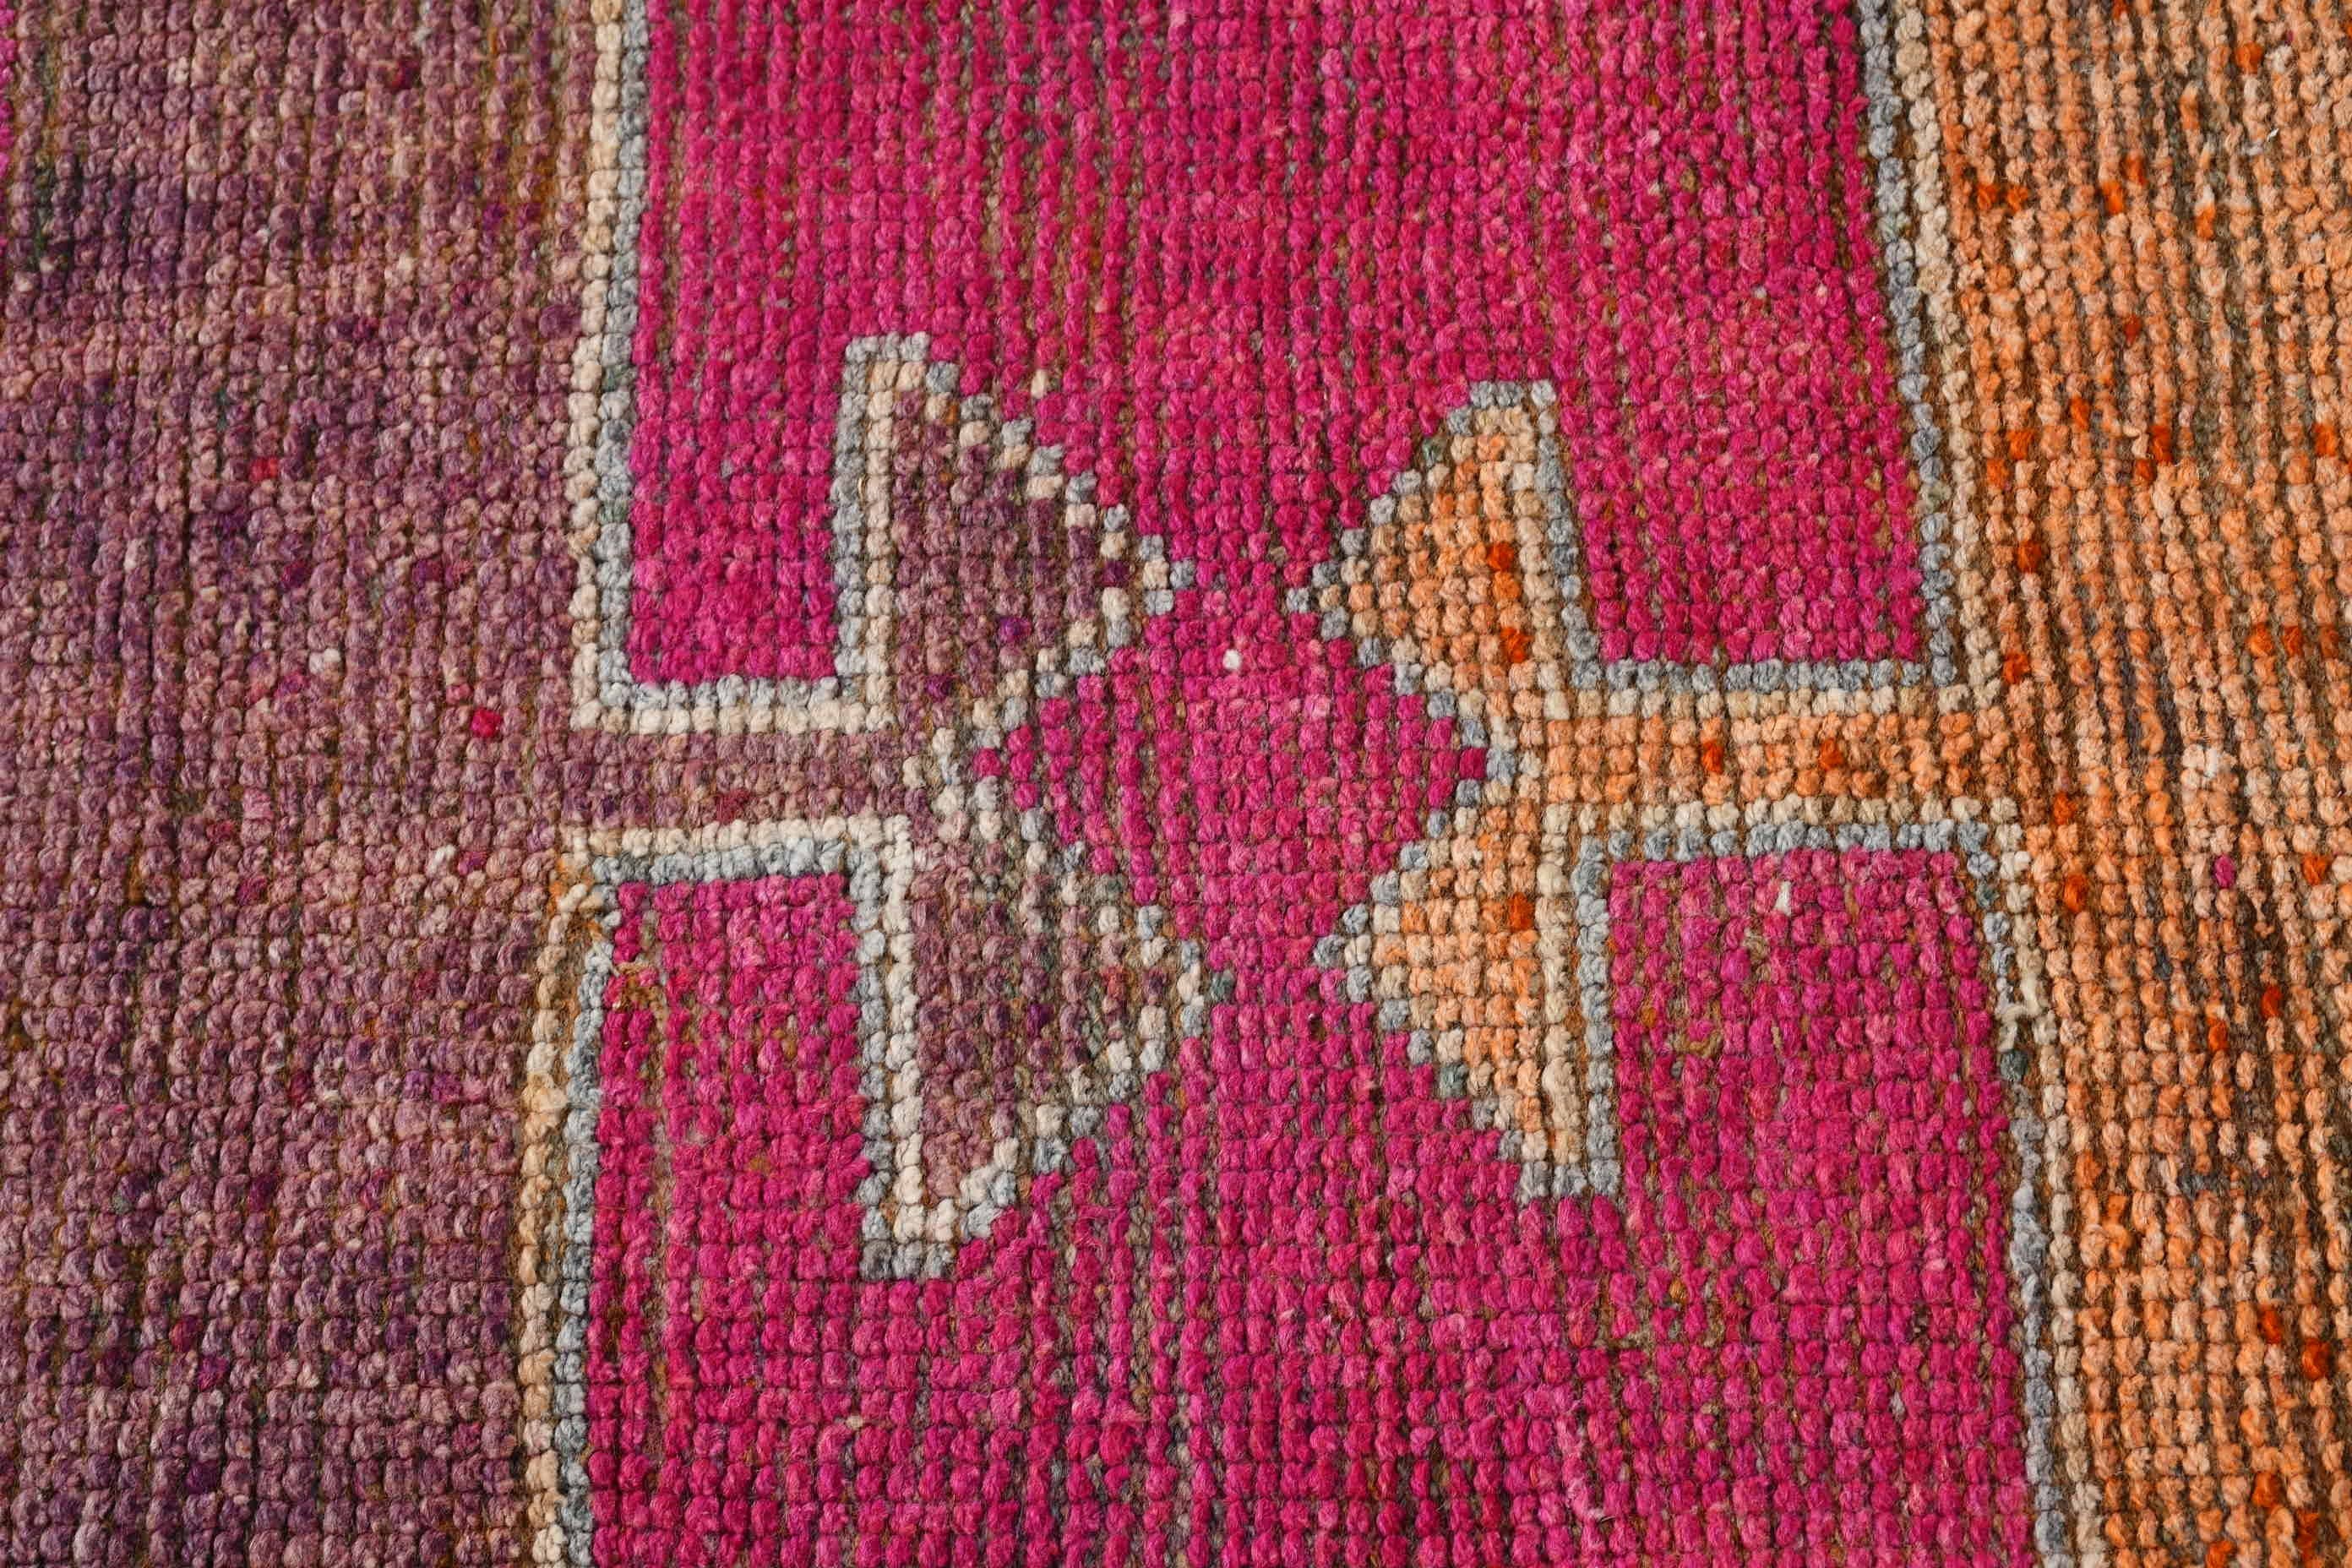 Turkish Rugs, Pink Bedroom Rug, Rugs for Stair, Kitchen Rugs, 3.4x11.7 ft Runner Rugs, Vintage Rugs, Cool Rug, Antique Rug Runner Rugs